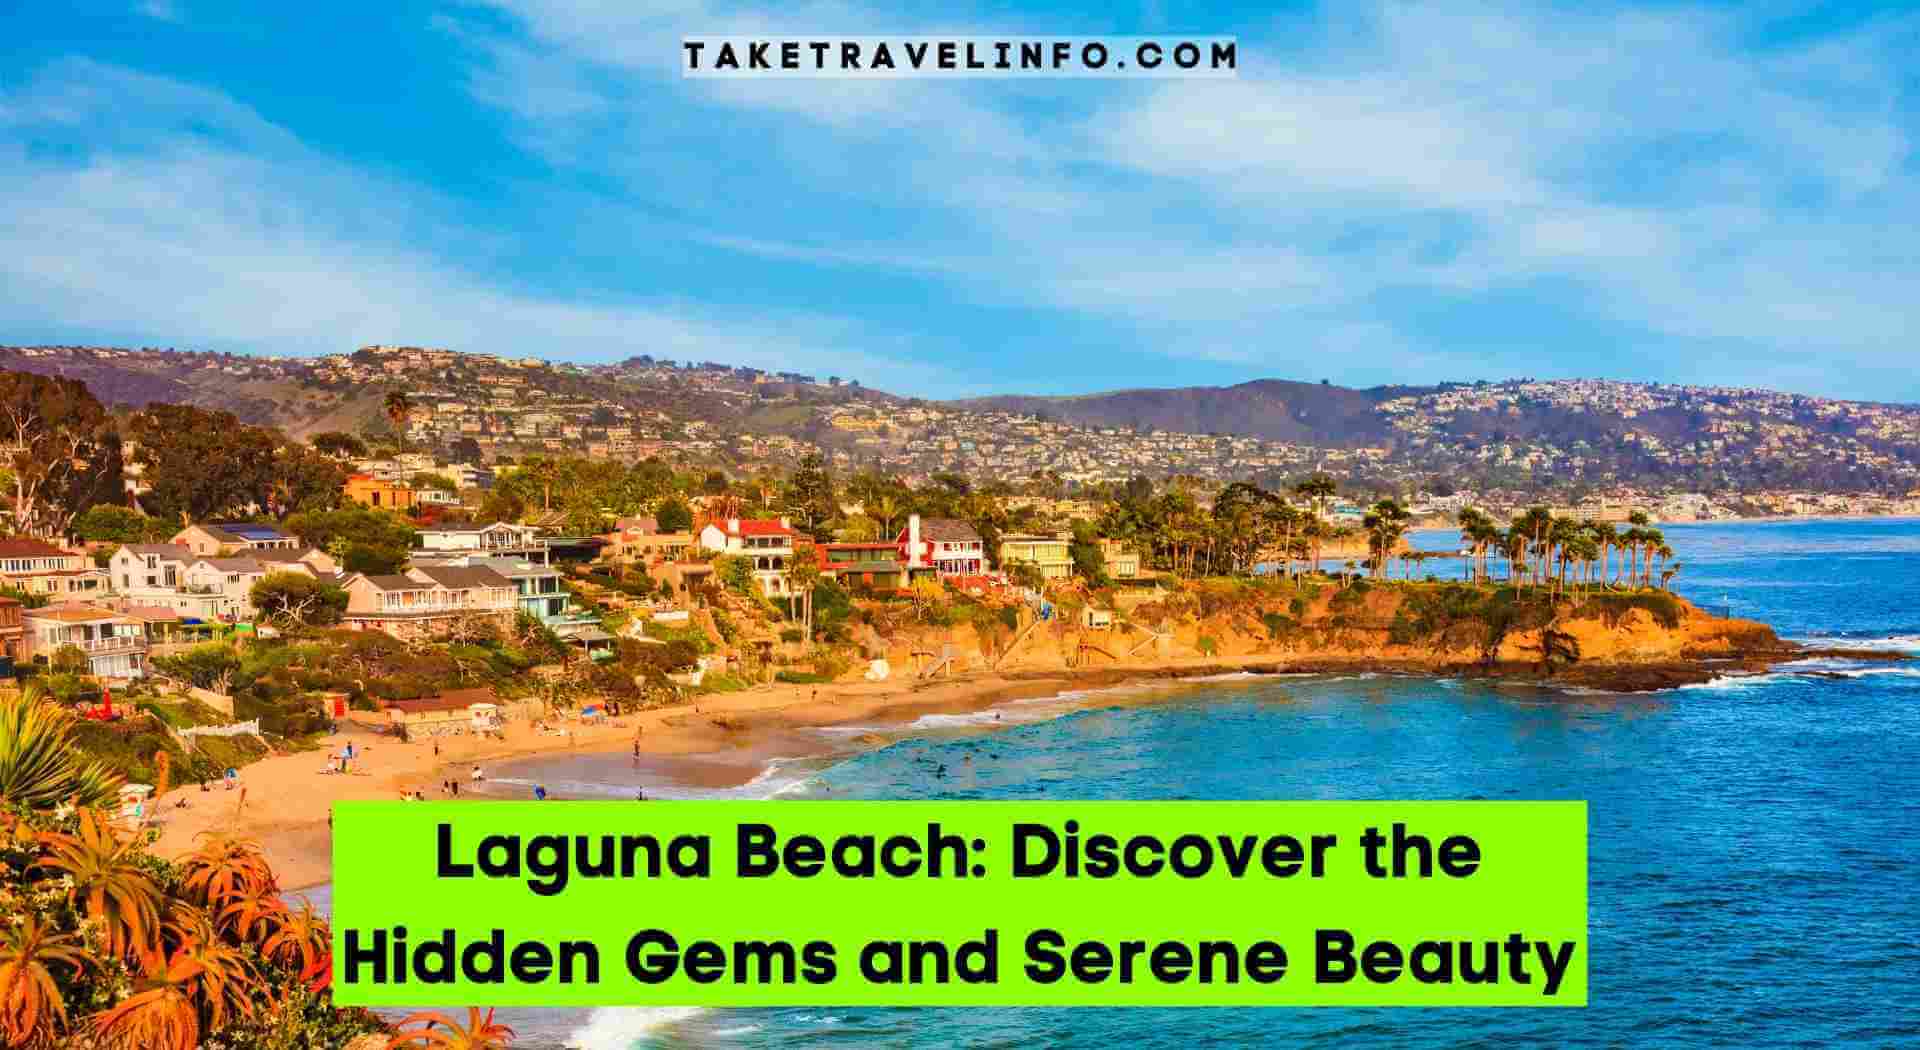 Laguna Beach: Discover the Hidden Gems and Serene Beauty